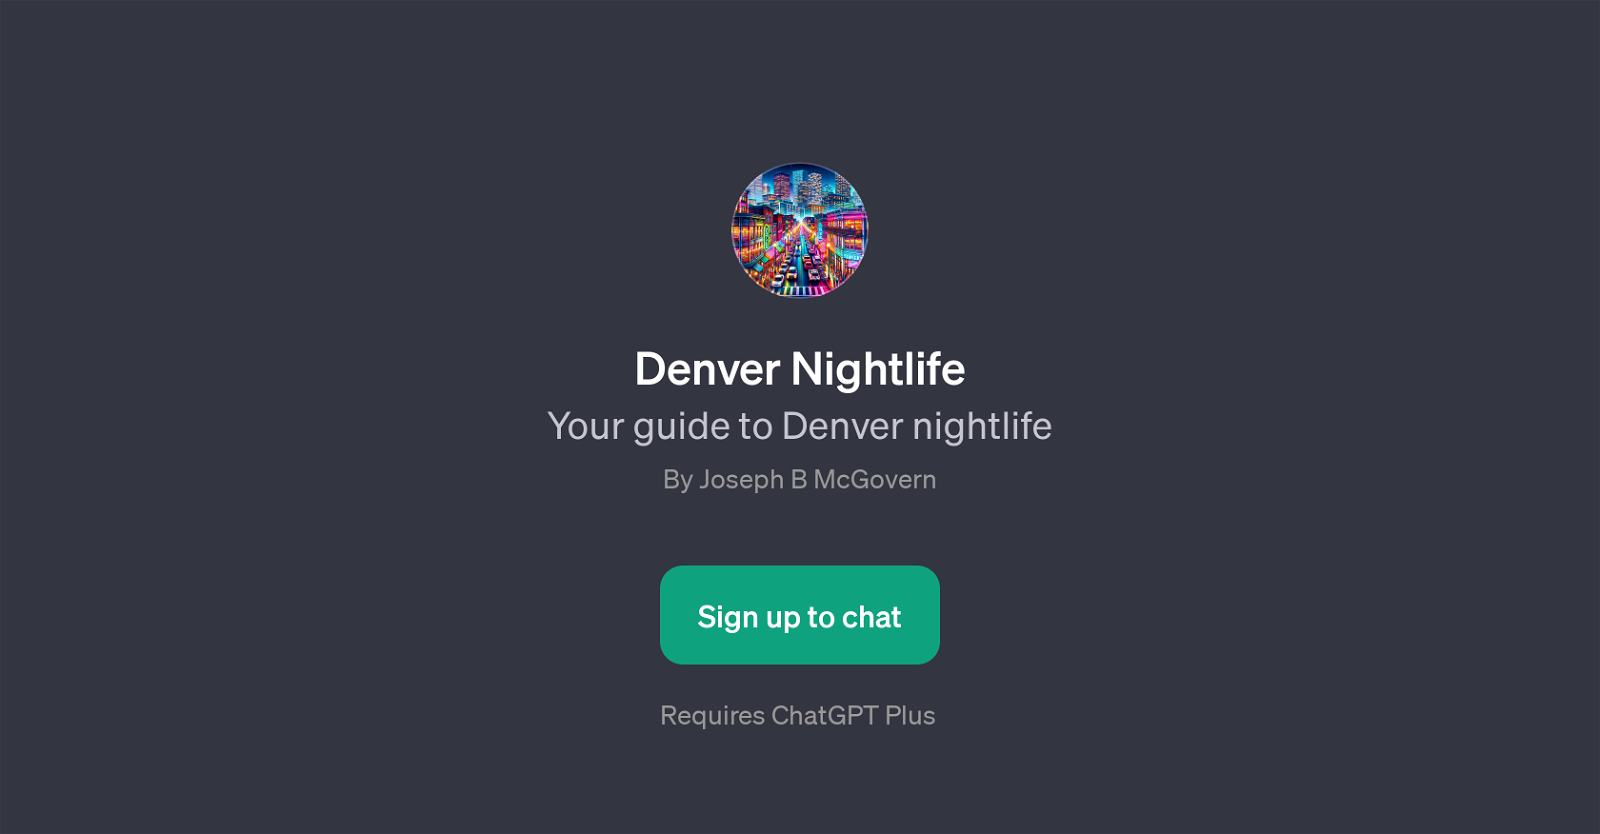 Denver Nightlife website